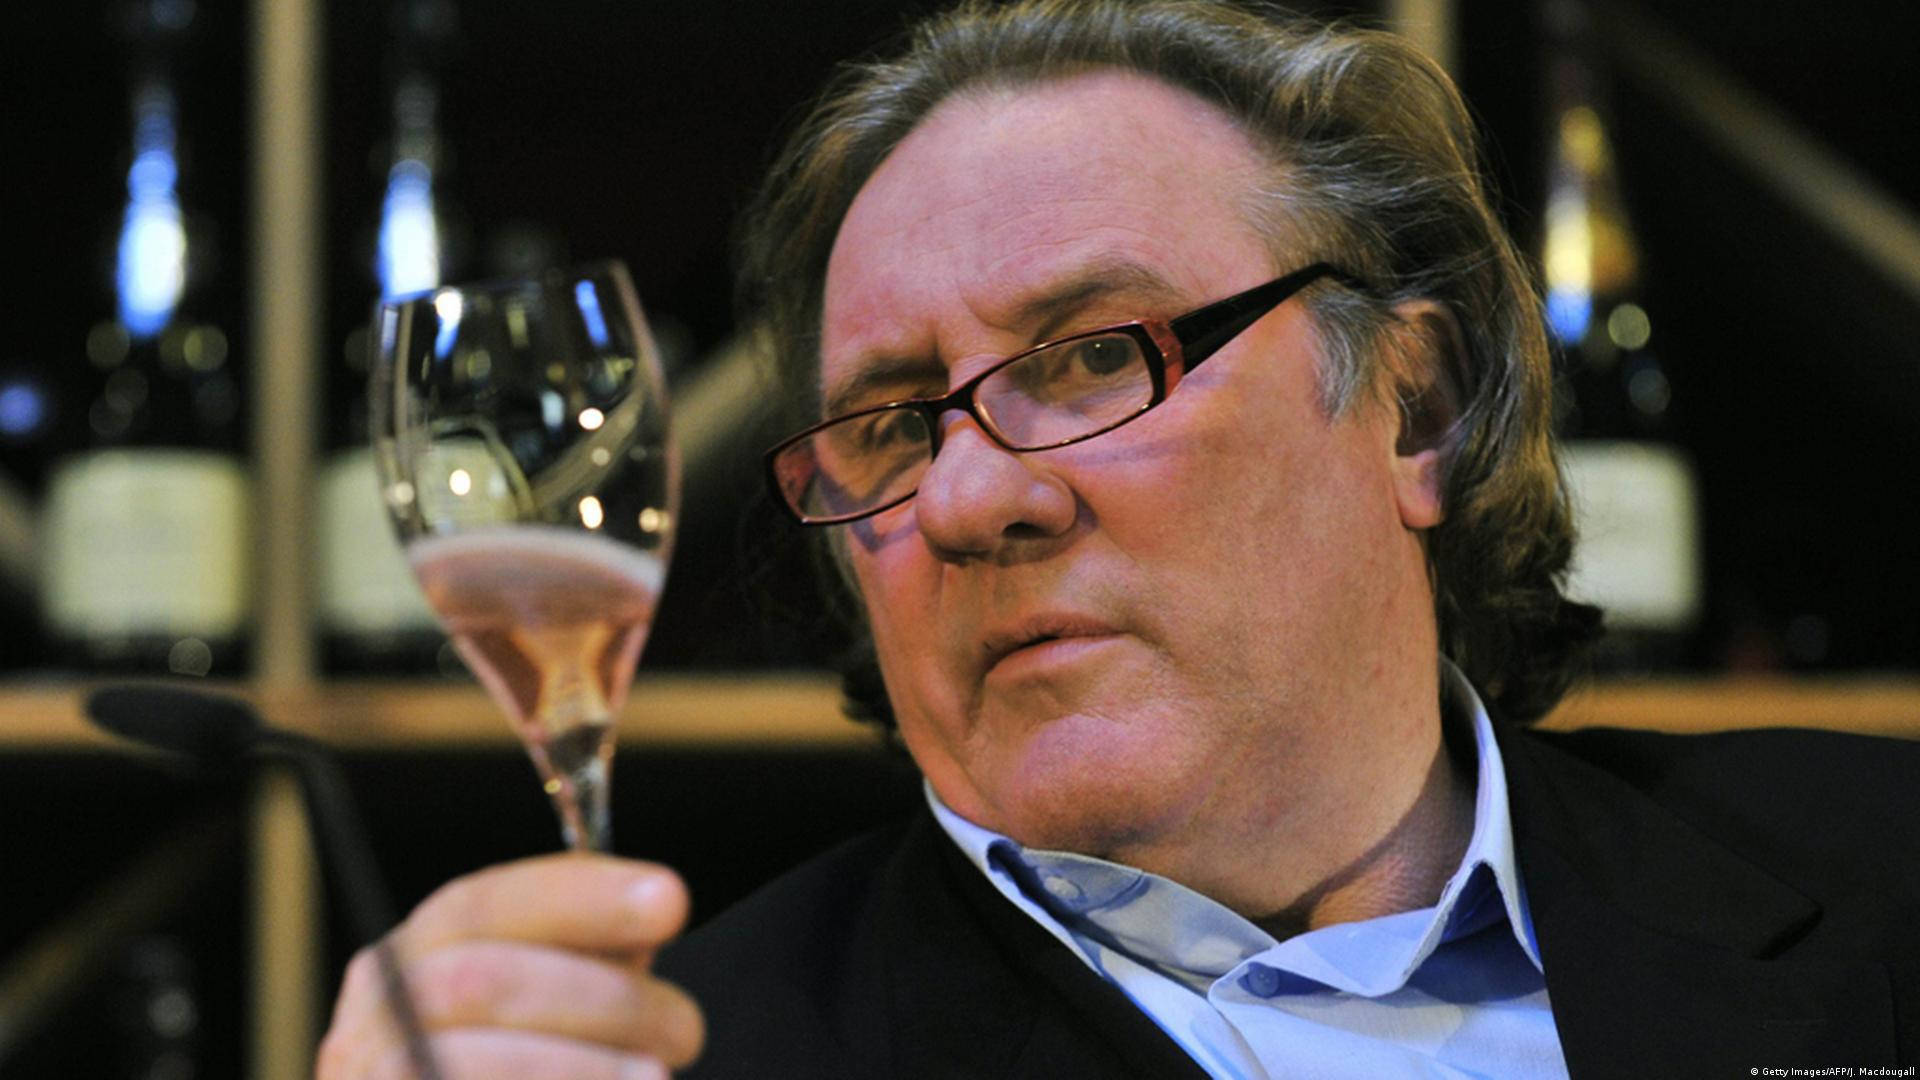 Gérarddepardieu Håller I Champagne Glas. Wallpaper